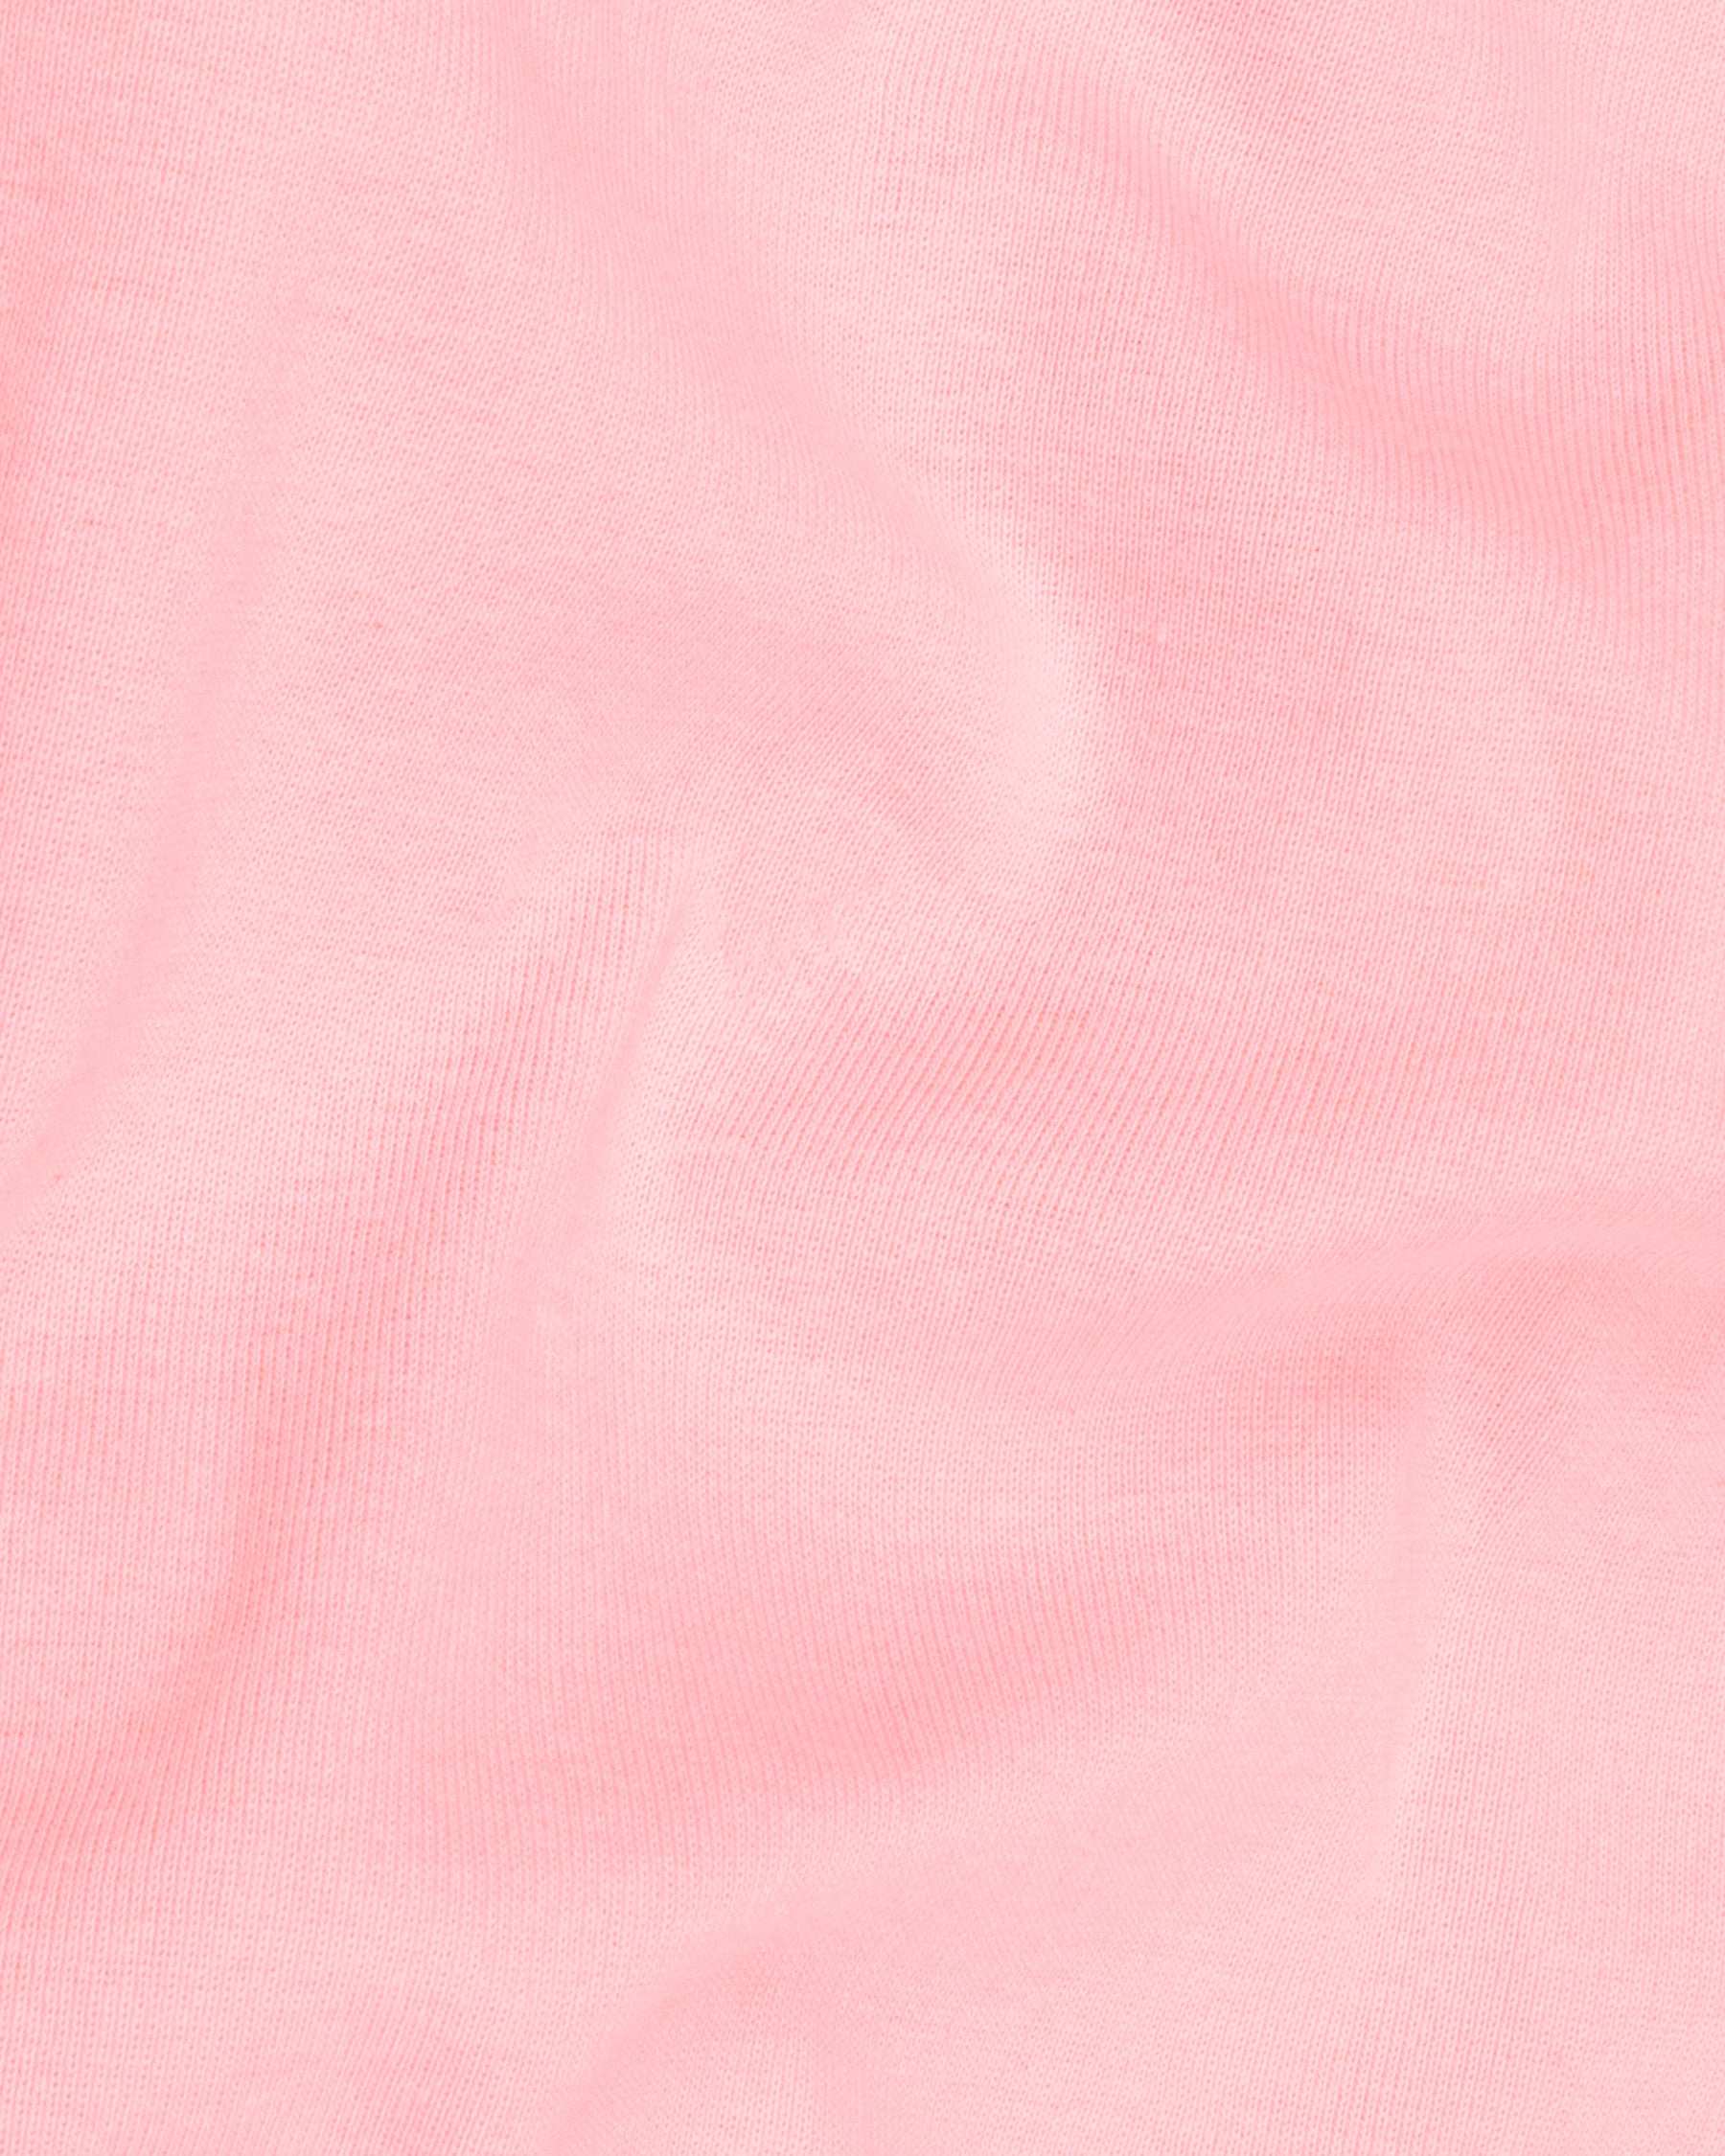 Sundown Pink Full Sleeve Premium Cotton Jersey Sweatshirt TS440-S, TS440-M, TS440-L, TS440-XL, TS440-XXL